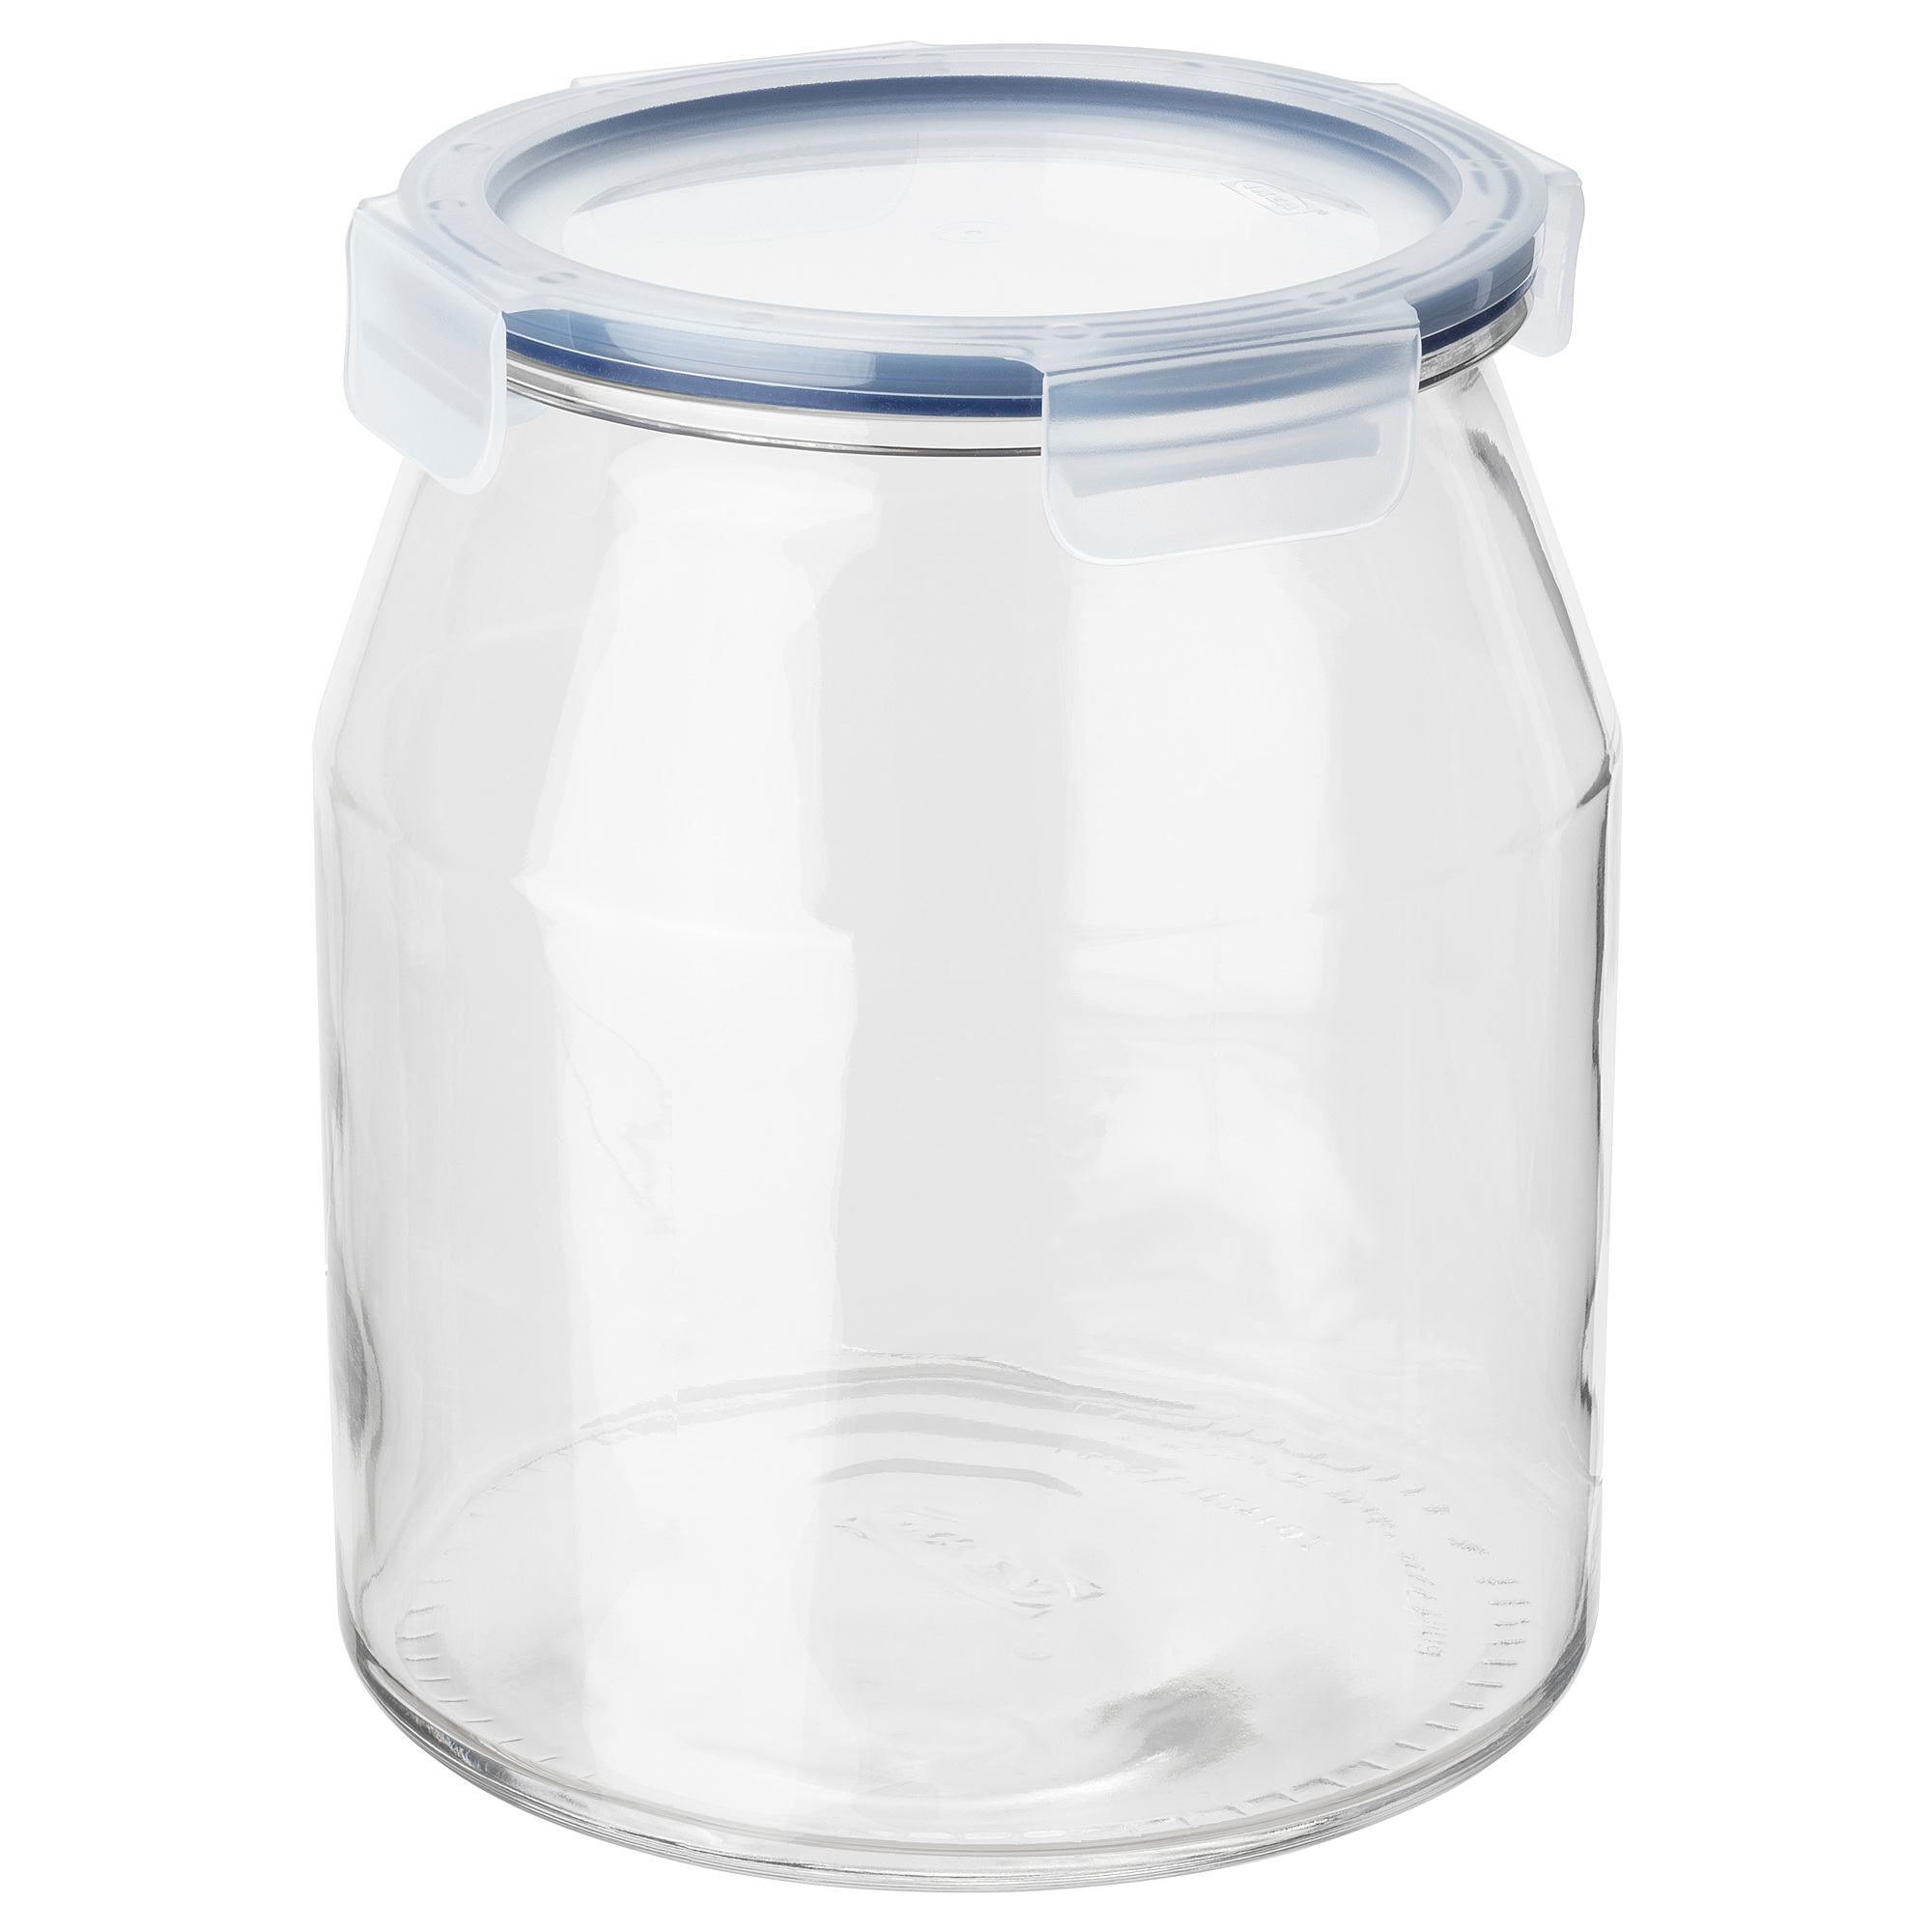 IKEA 365+ jar with lid